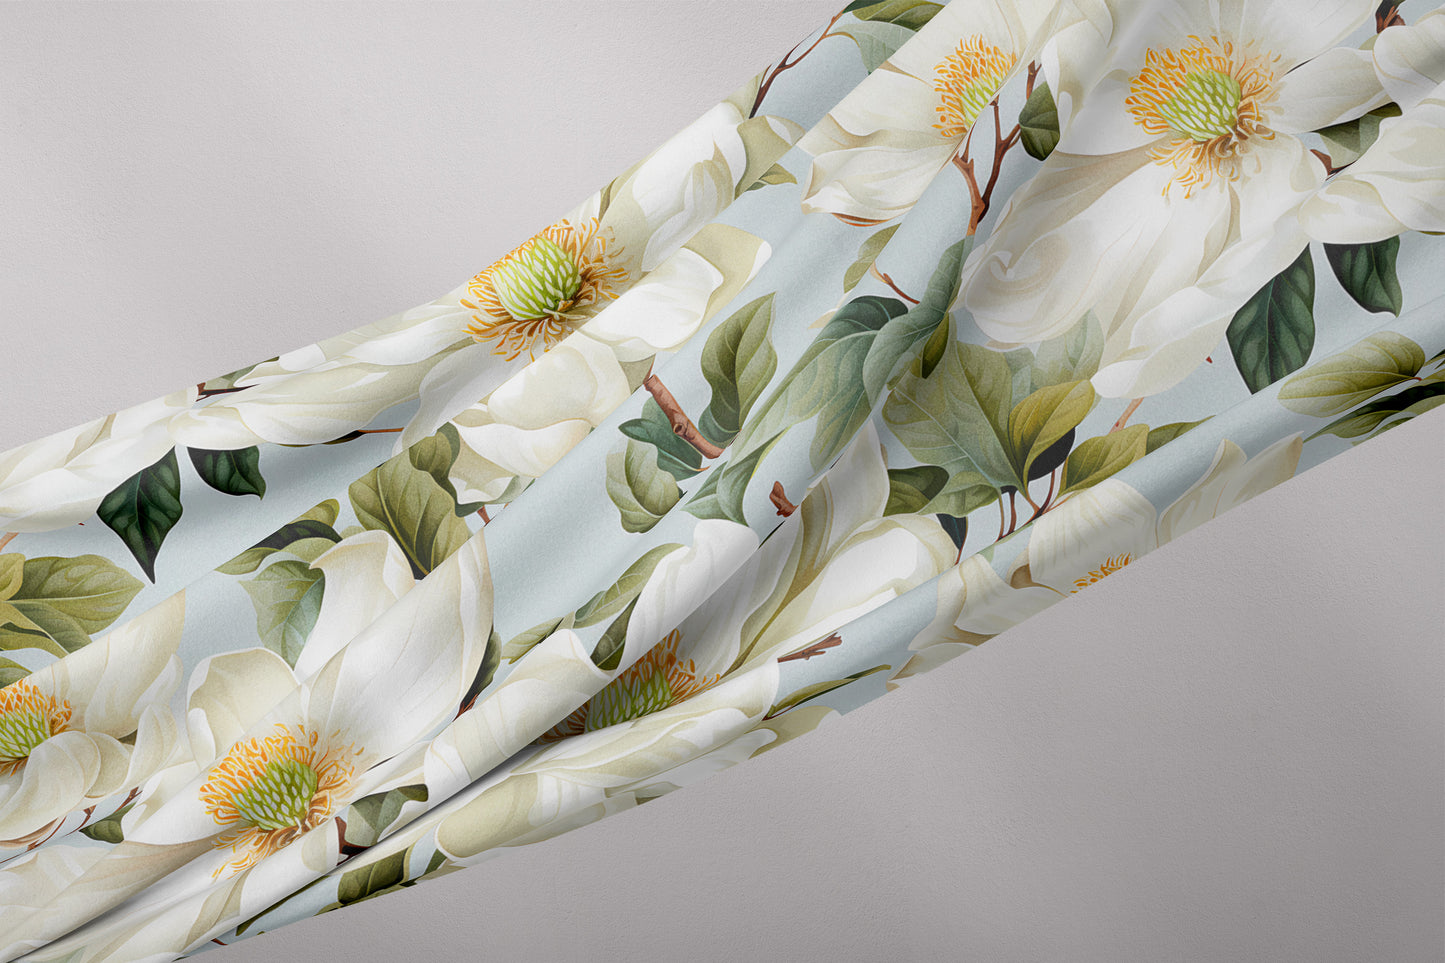 Magnolia Serenade Fabric by Studio Ten Design